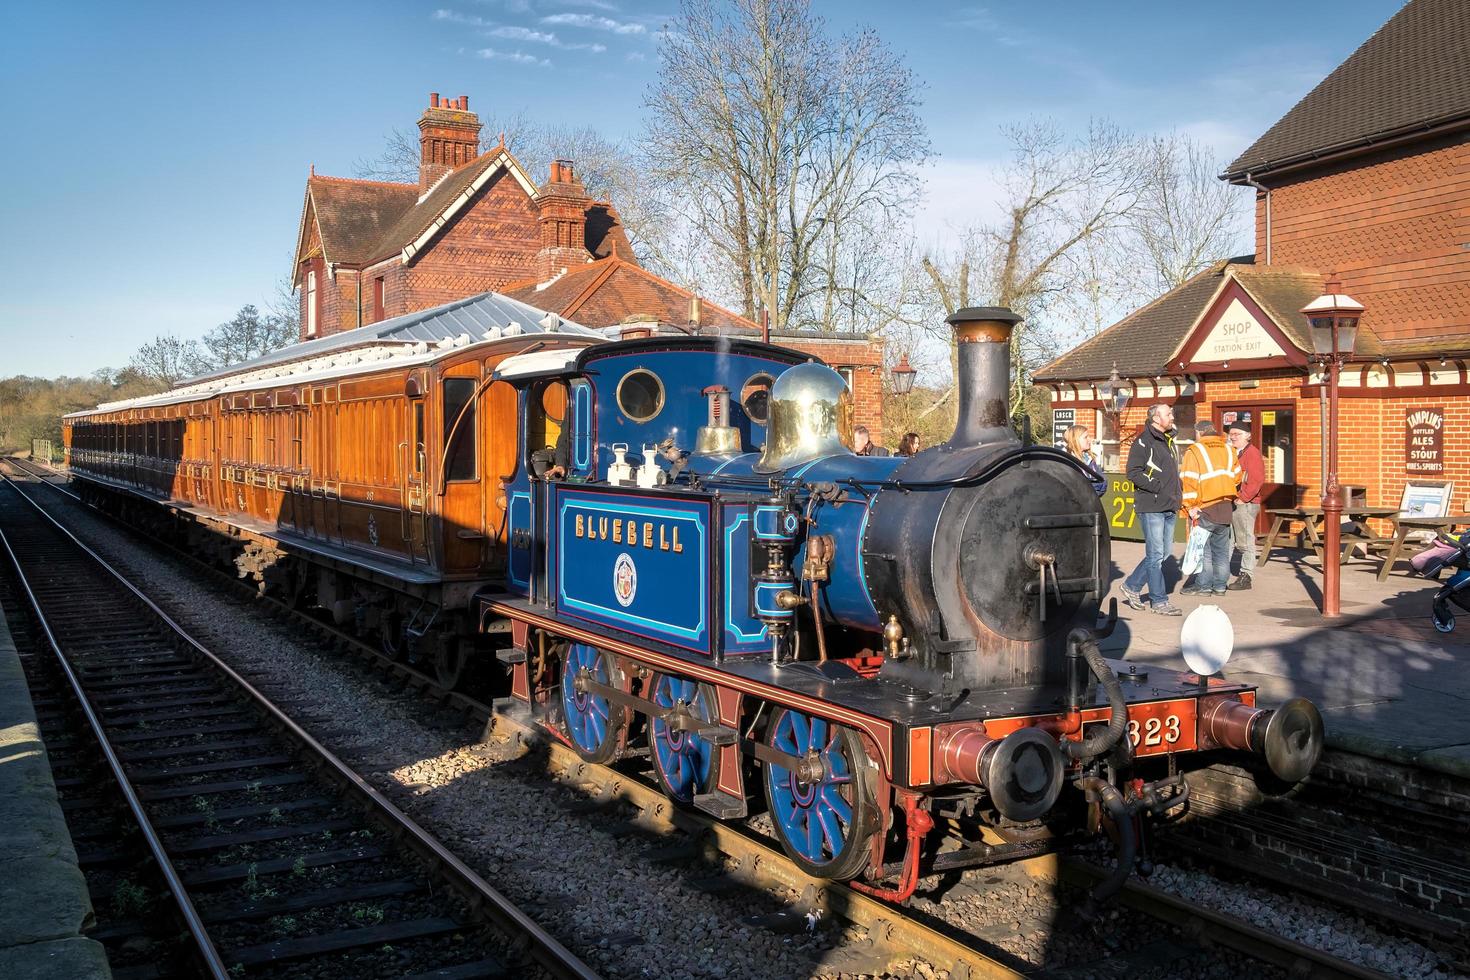 Sheffield Park, East Sussex, Royaume-Uni, 2013. Bluebell train à vapeur à la gare de Sheffield Park photo